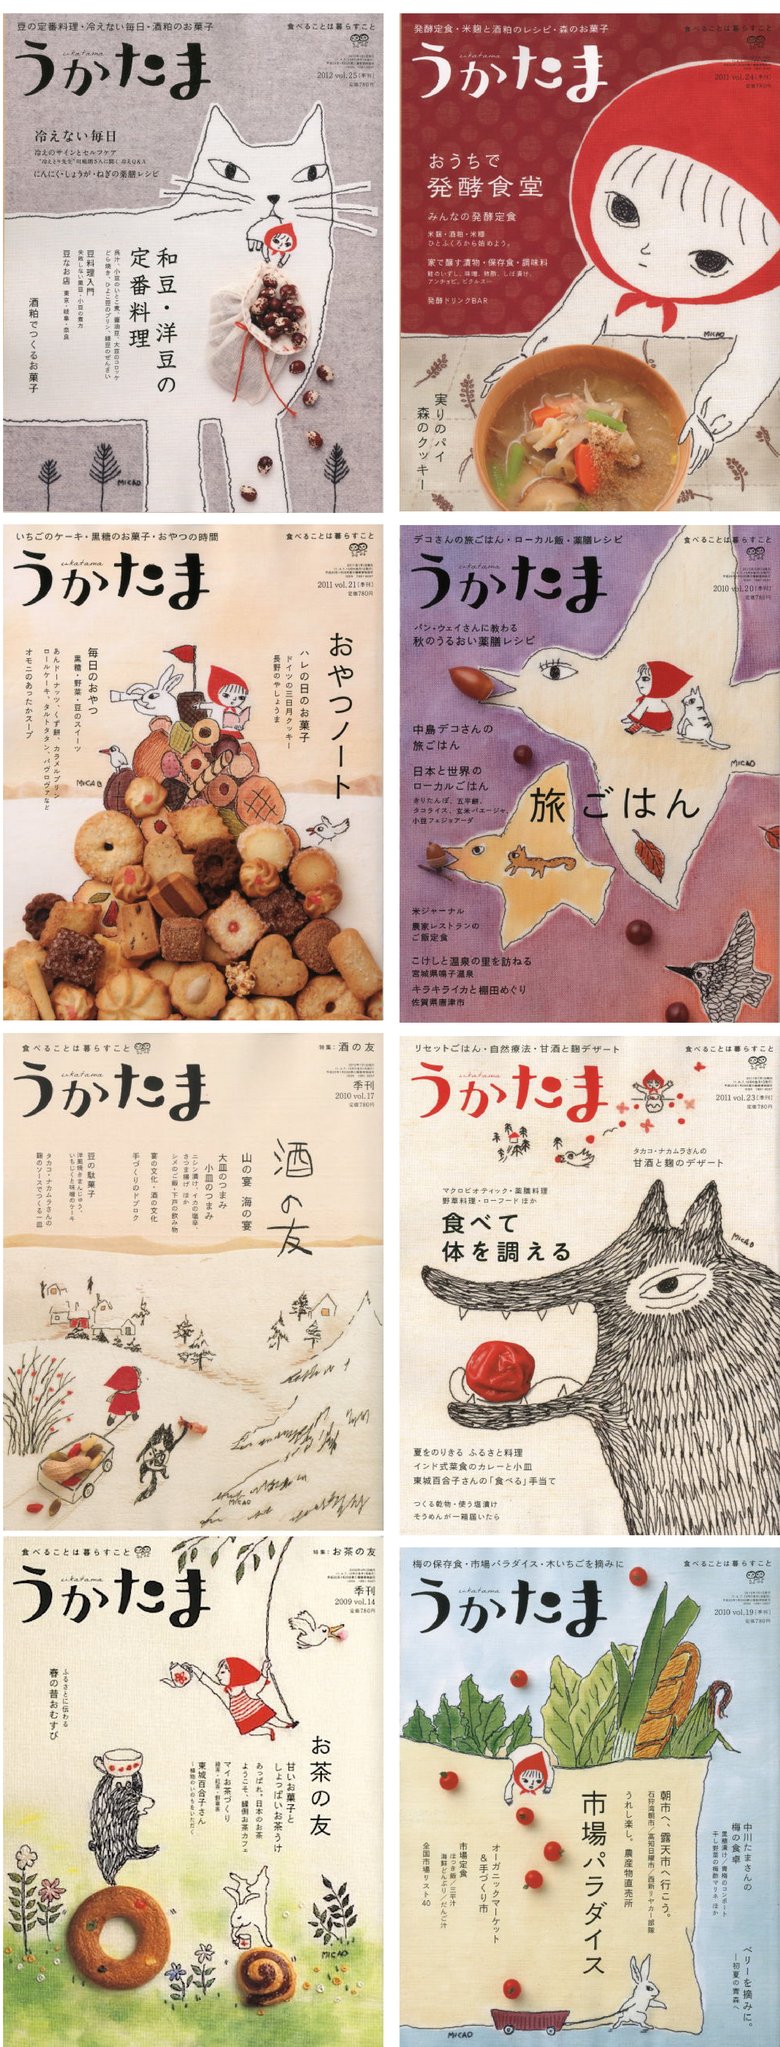 平佐実香设计日本食物杂志封面